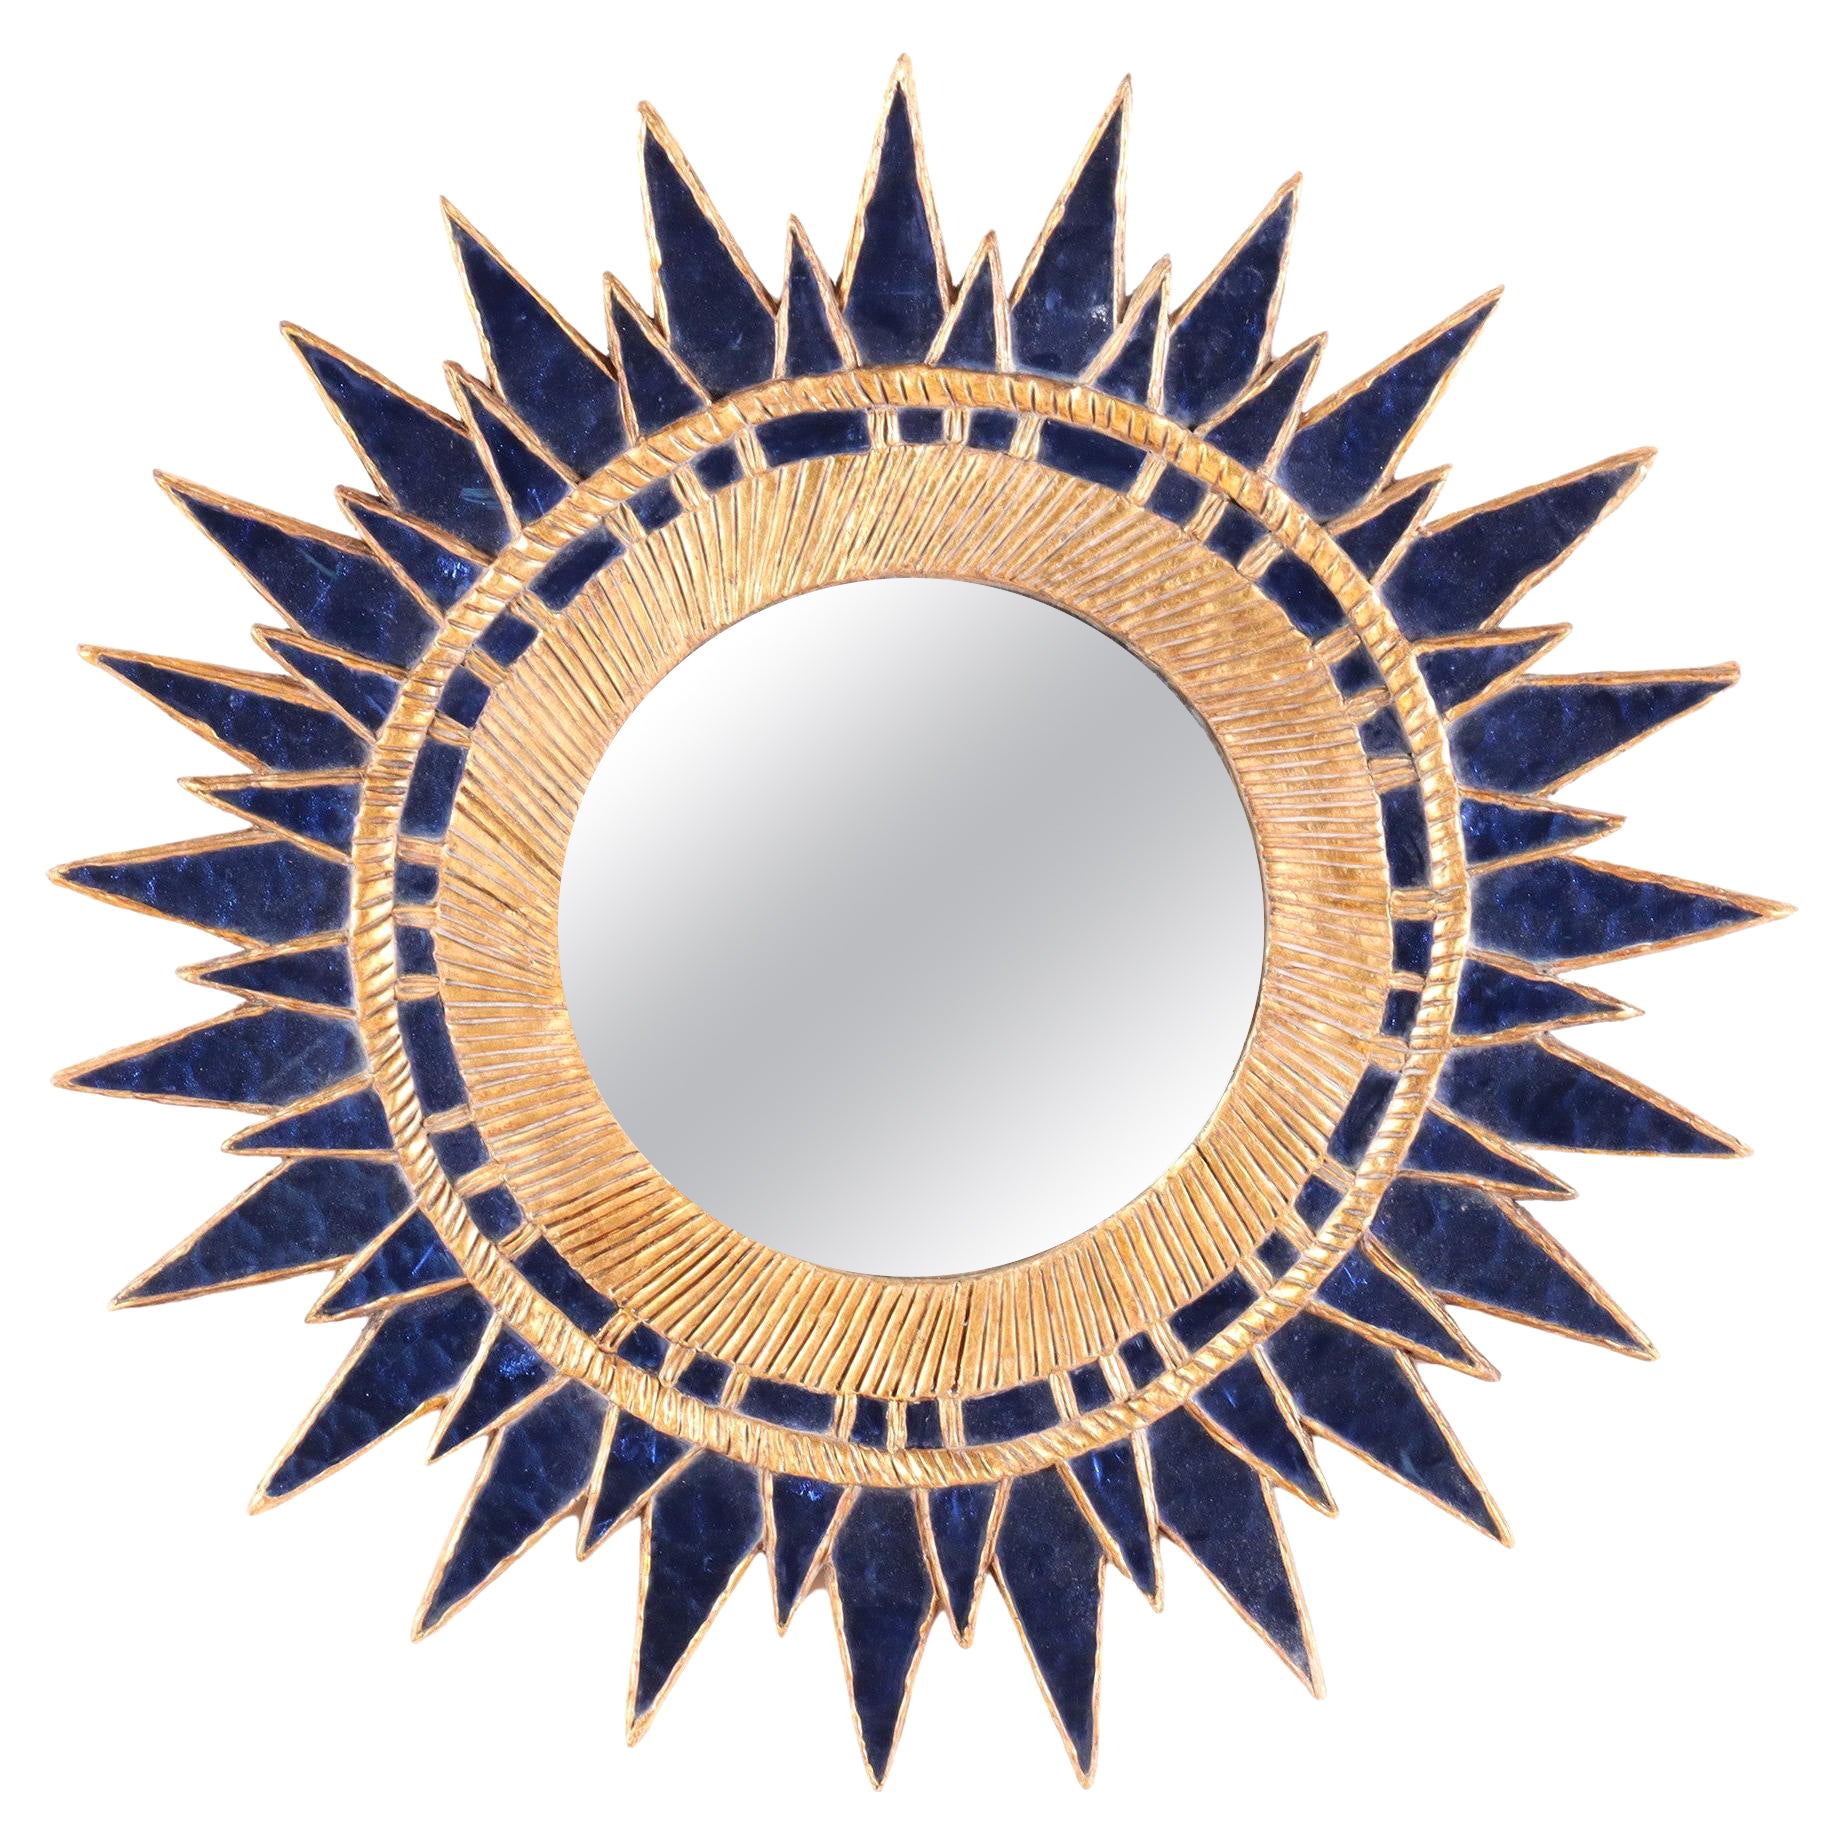 Dark Blue Sunburst Mirror, in the Manner of Line Vautrin, Contemporary